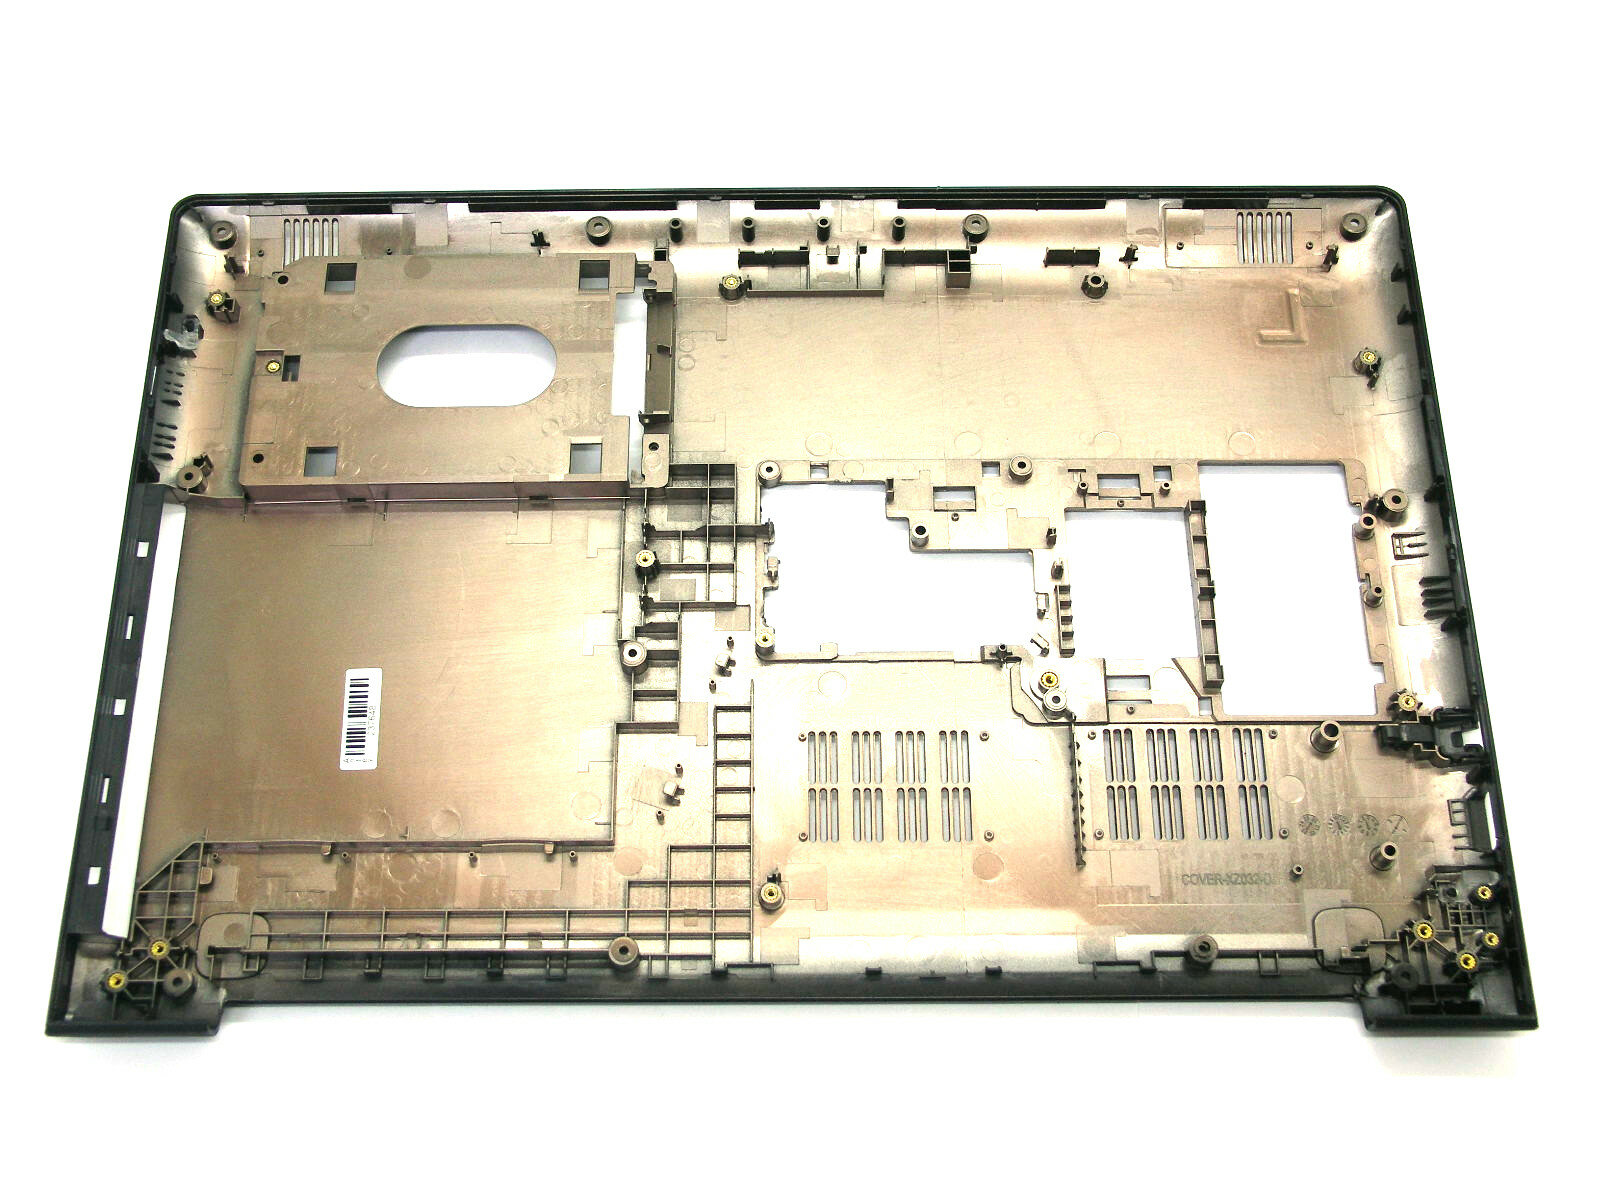 Поддон для ноутбука Lenovo IdeaPad 510-15ISK 310-15 310-15ikb черный (BP-D-03)